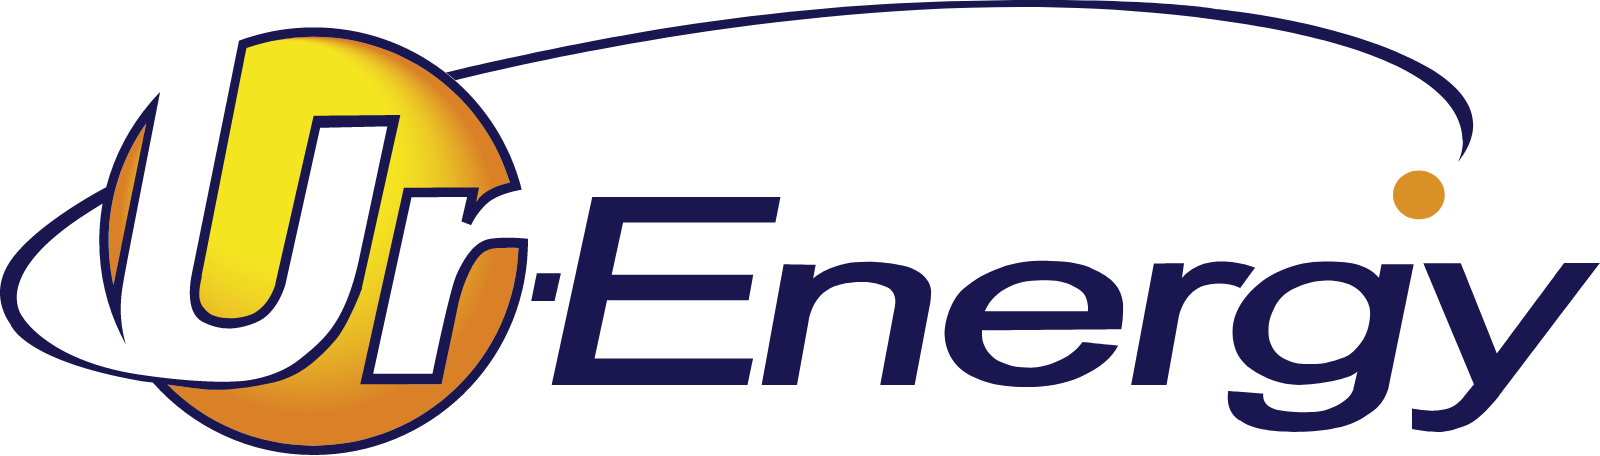 Ur Energy logo large (transparent PNG)